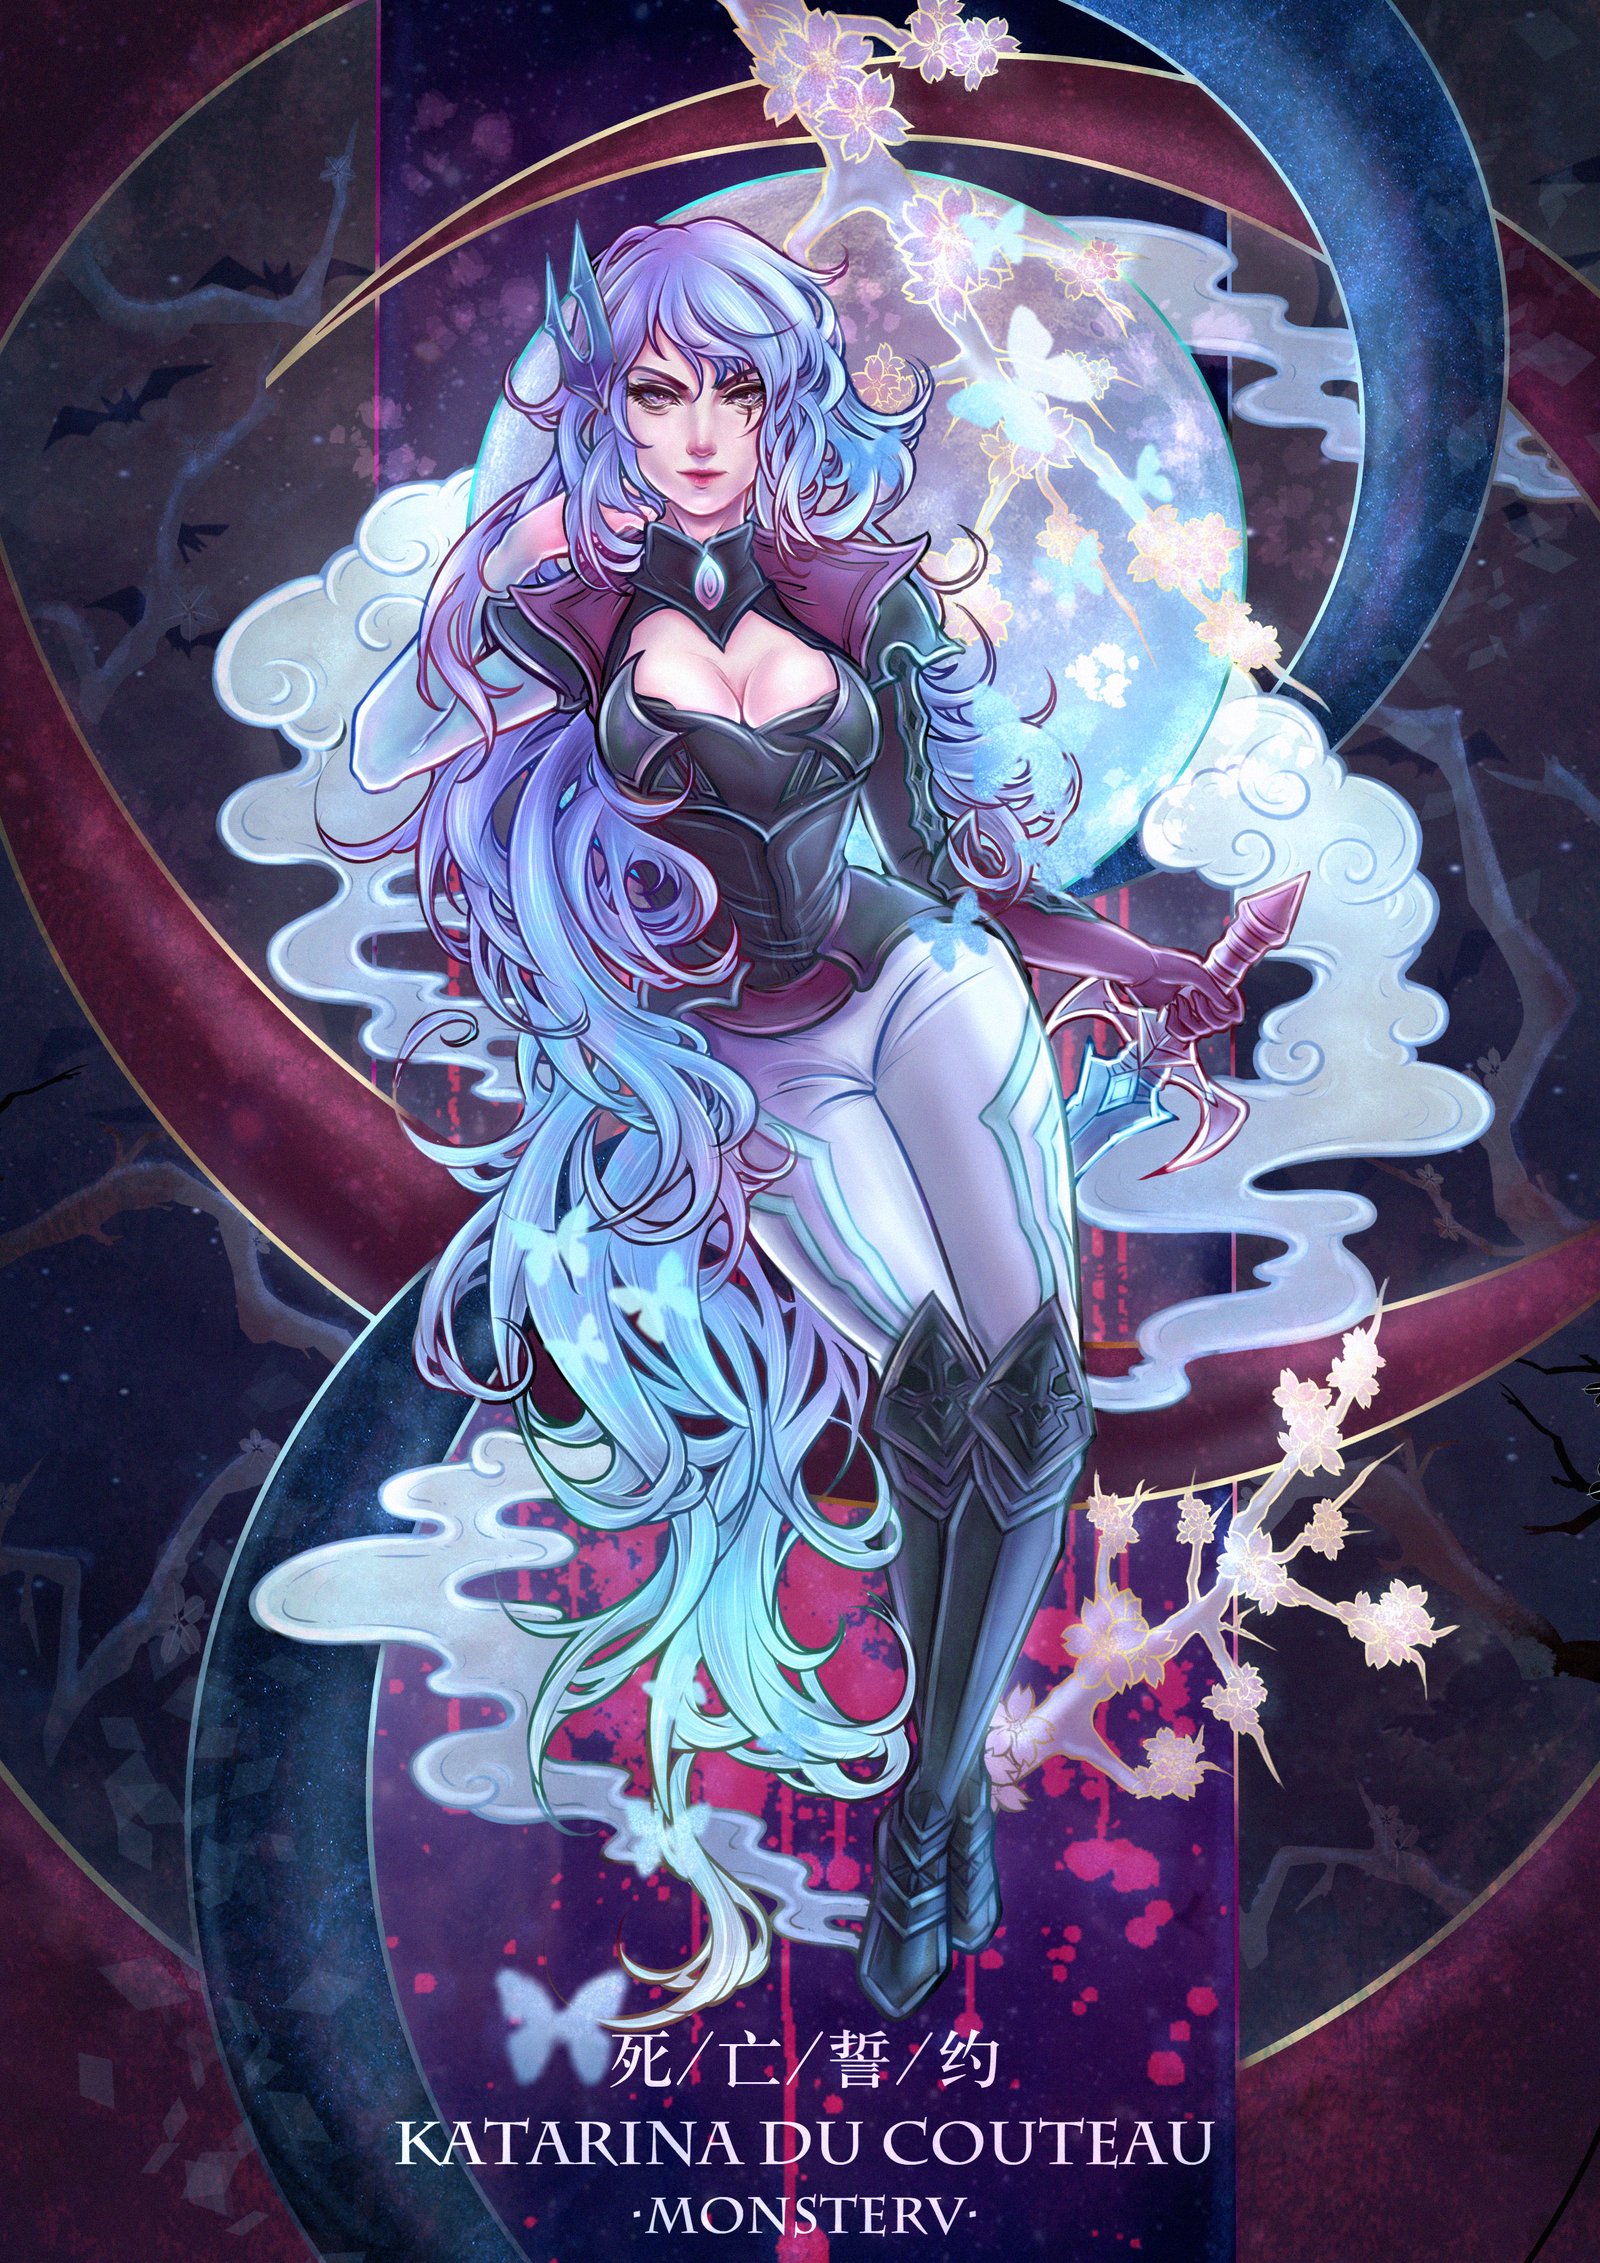 Death Sworn Katarina by MonsterV HD Wallpaper Background Fan Art Artwork League of Legends lol